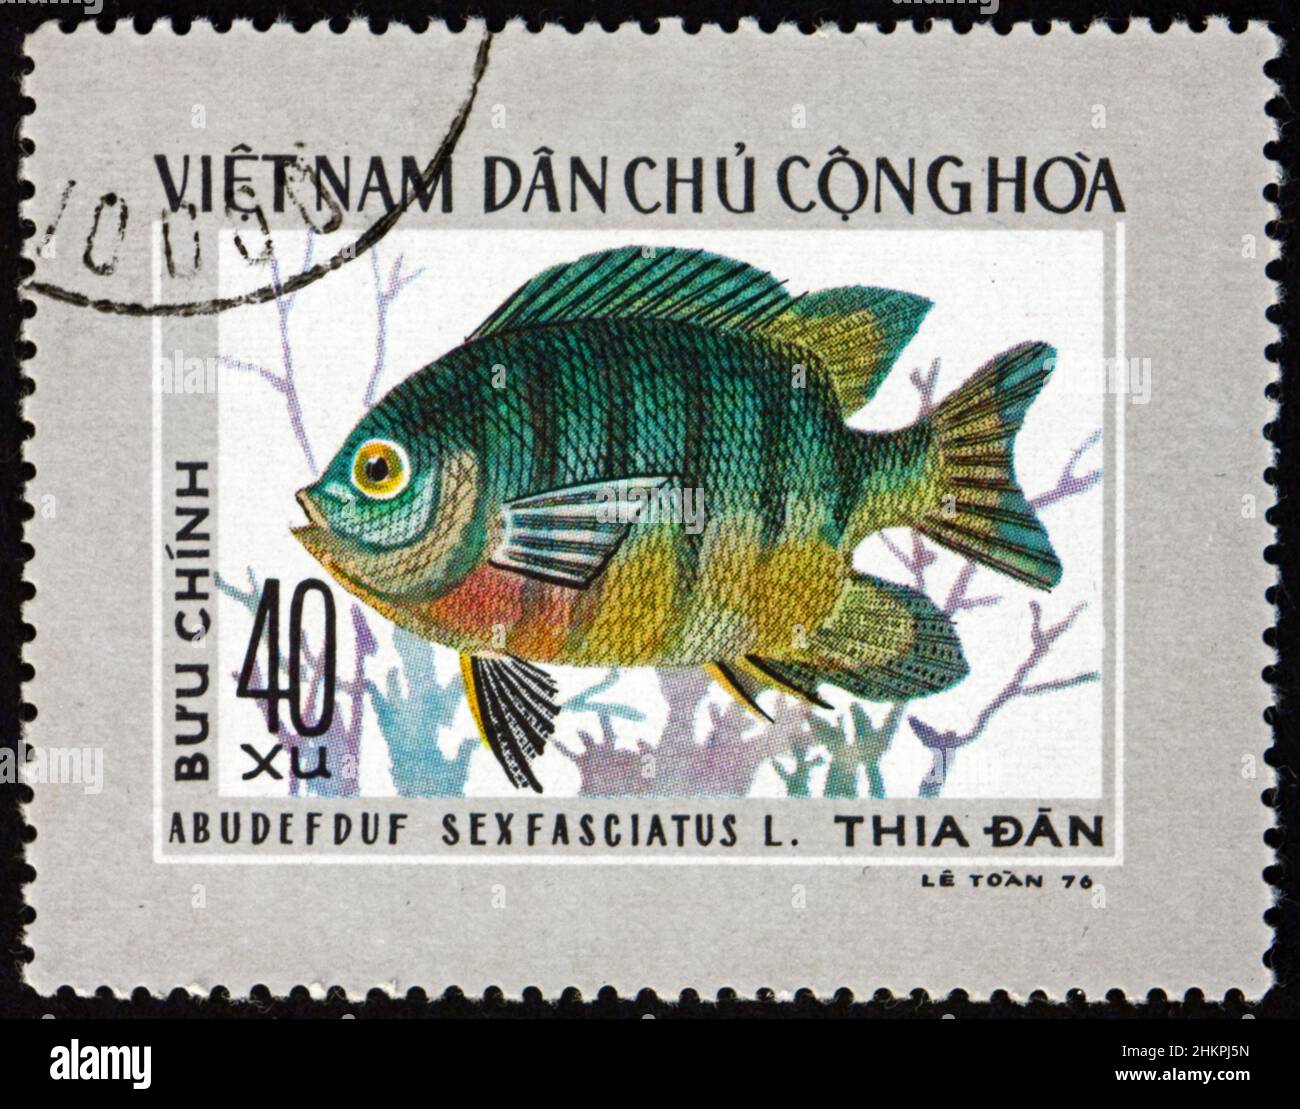 VIETNAM - CIRCA 1976: Un francobollo stampato in Vietnam mostra sergente a coda di forbice, abudefduf sexfasciatus, è un grande damselfish, circa 1976 Foto Stock